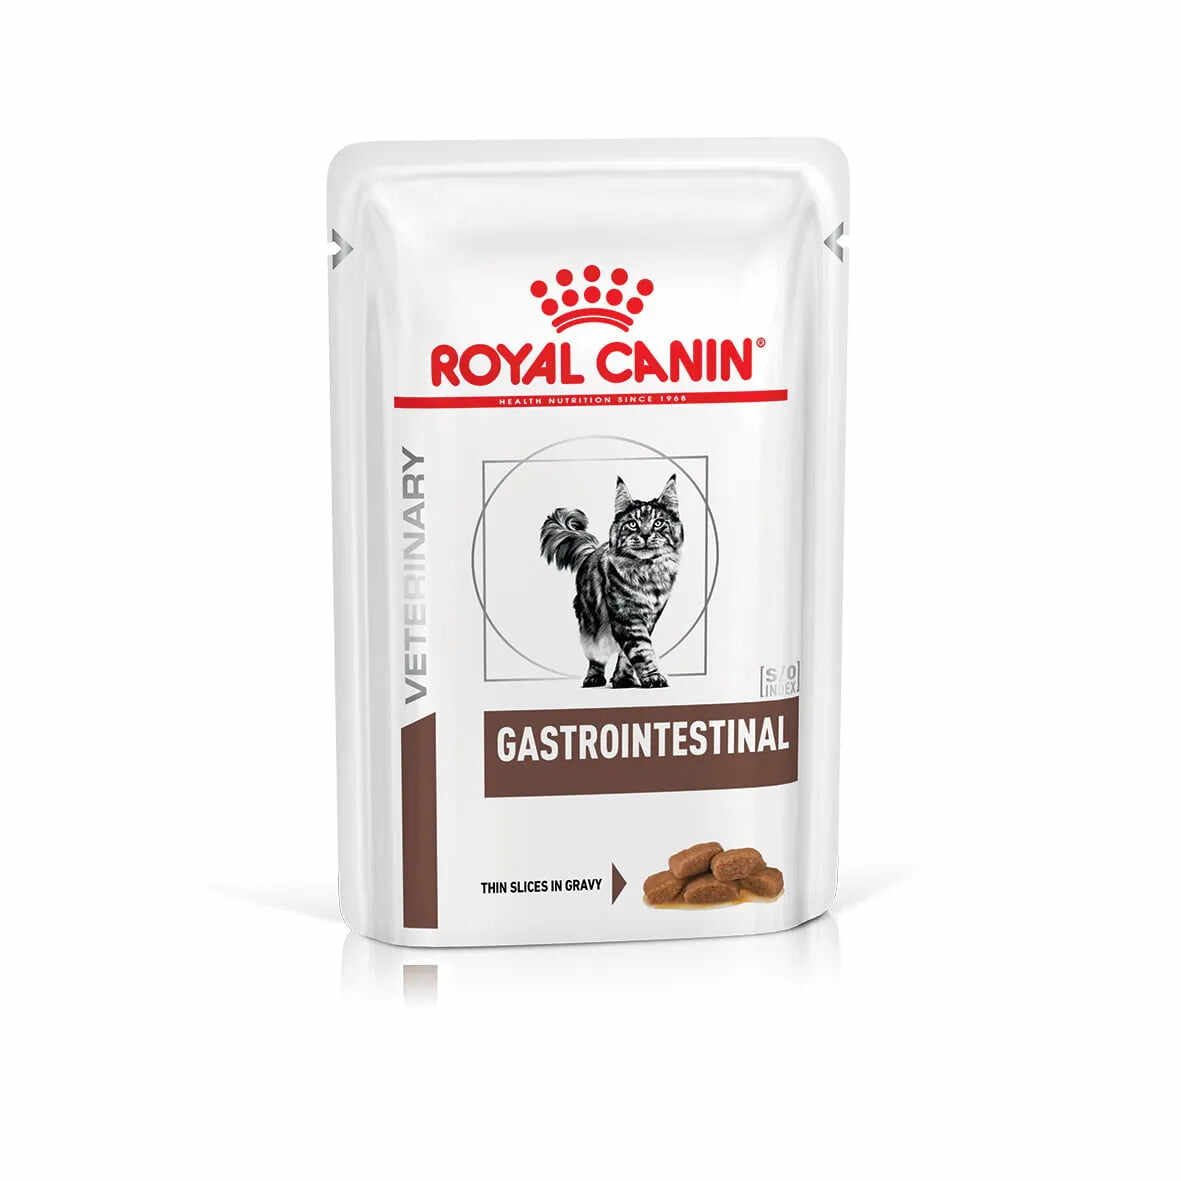 Royal Canin - Feline Gastro Intestinal Pouch 85g